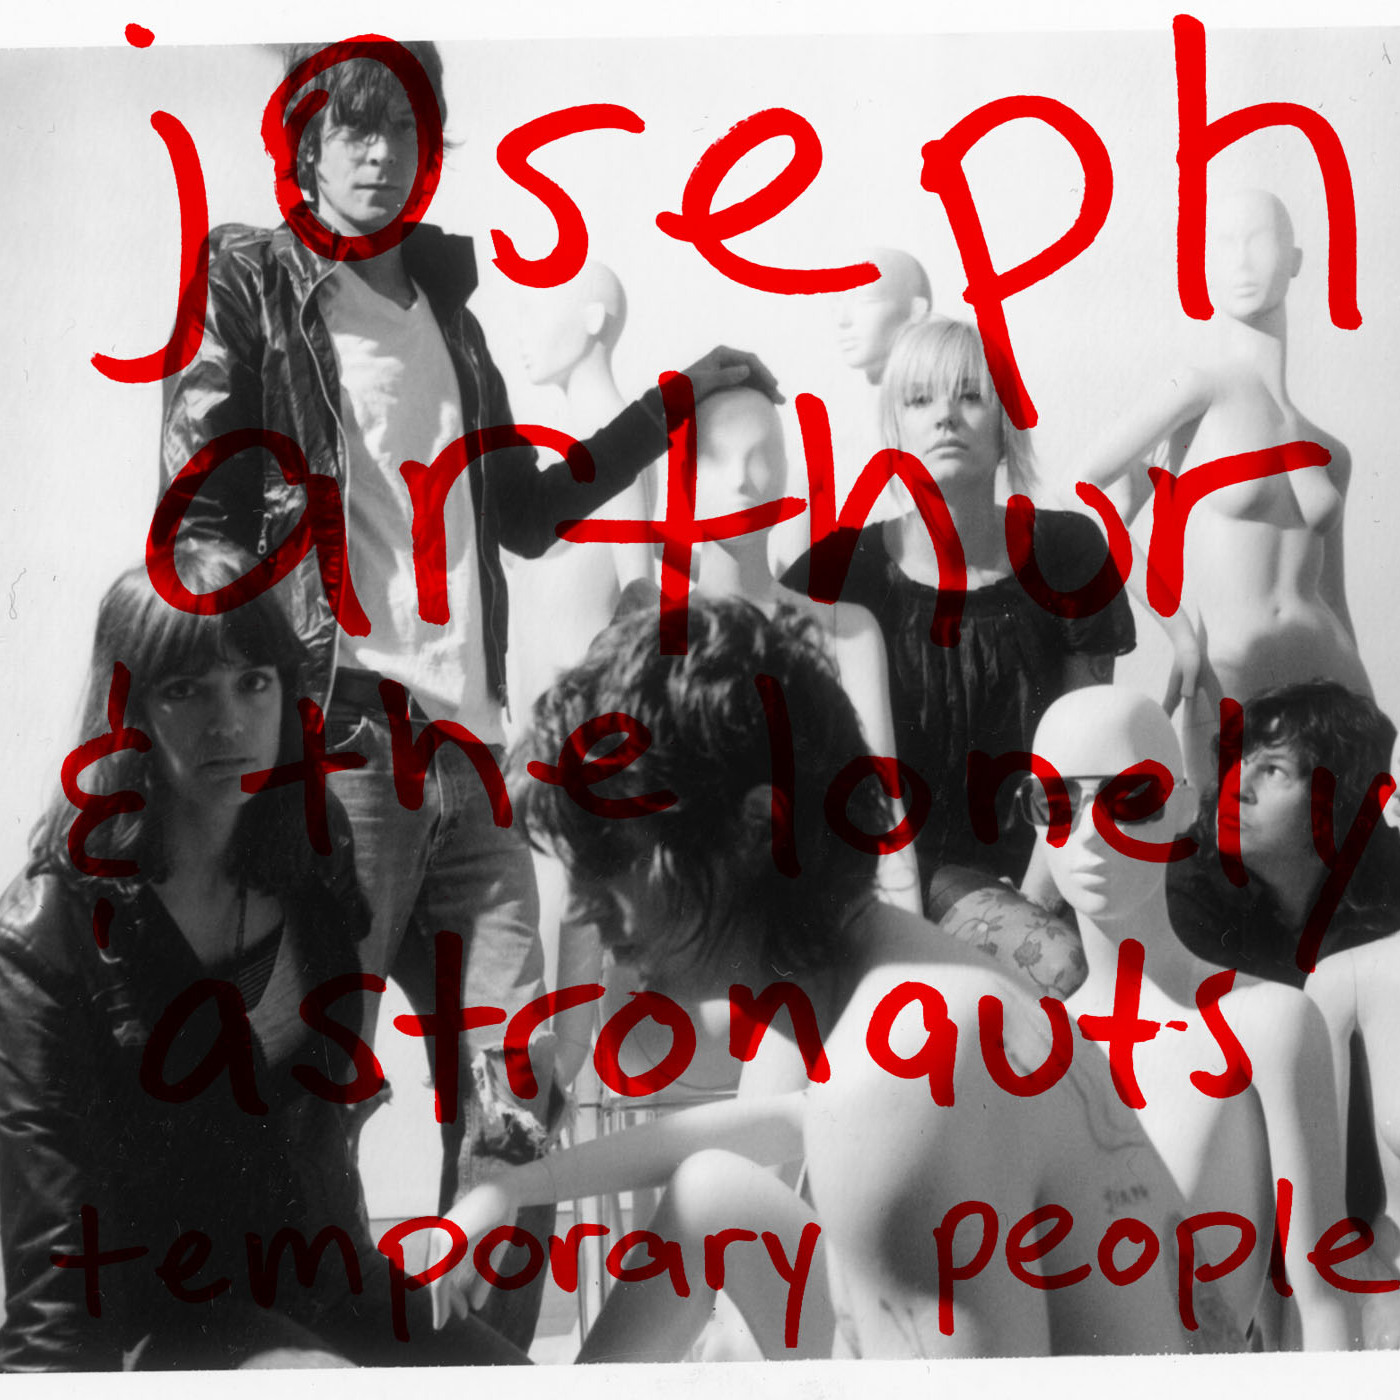 Joseph Arthur - Temporary People